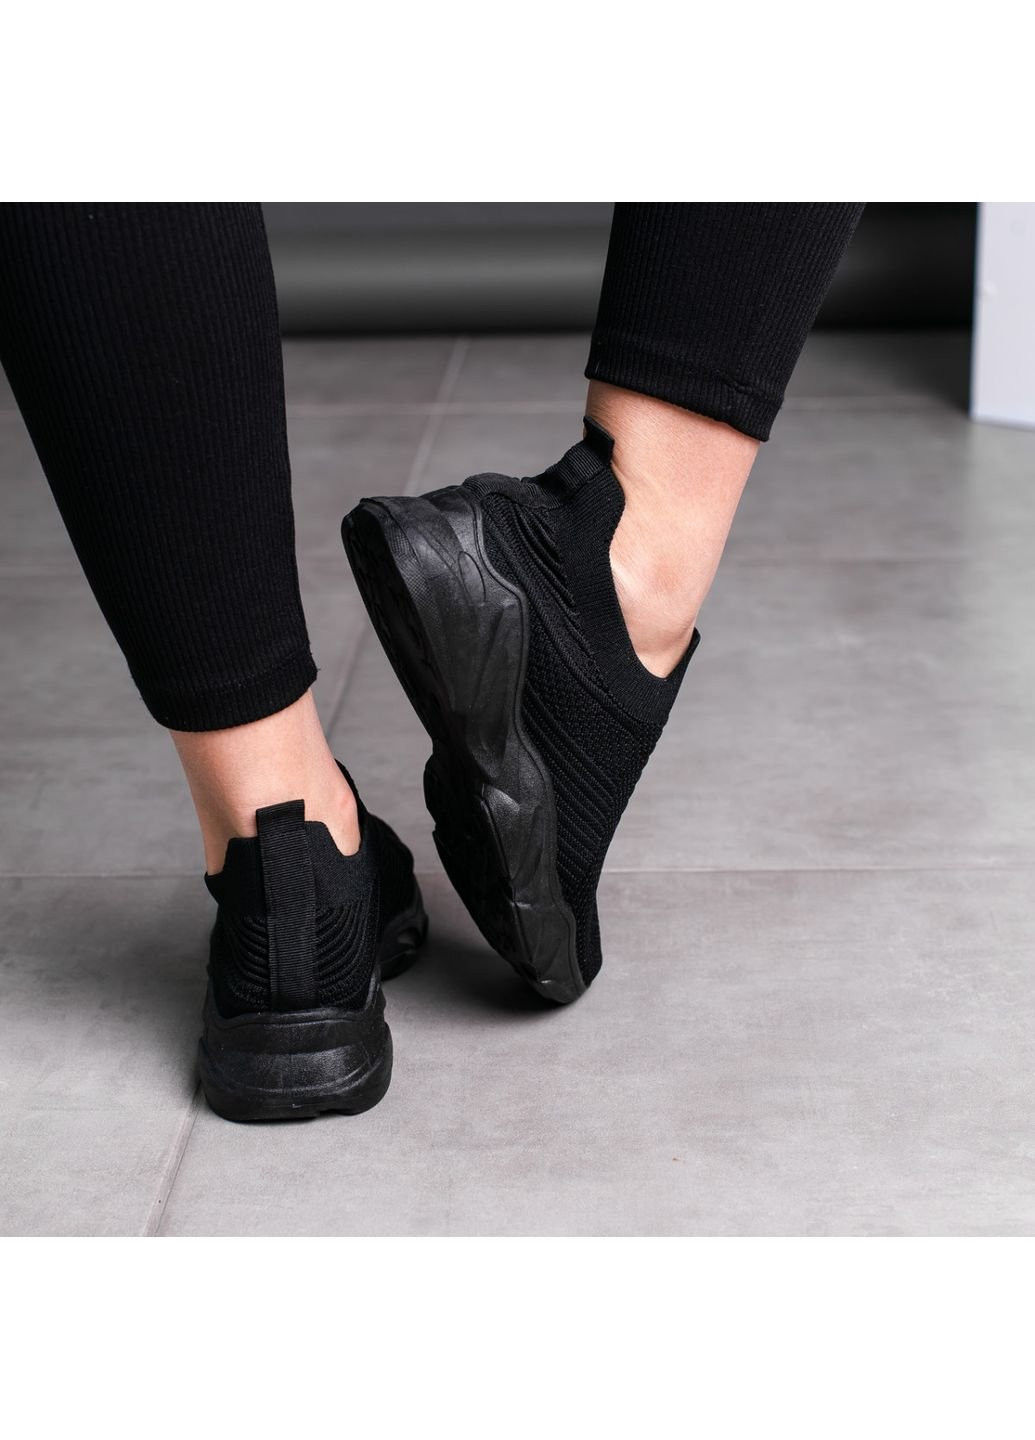 Черные демисезонные кроссовки женские toby 3559 39 24,5 см черный Fashion